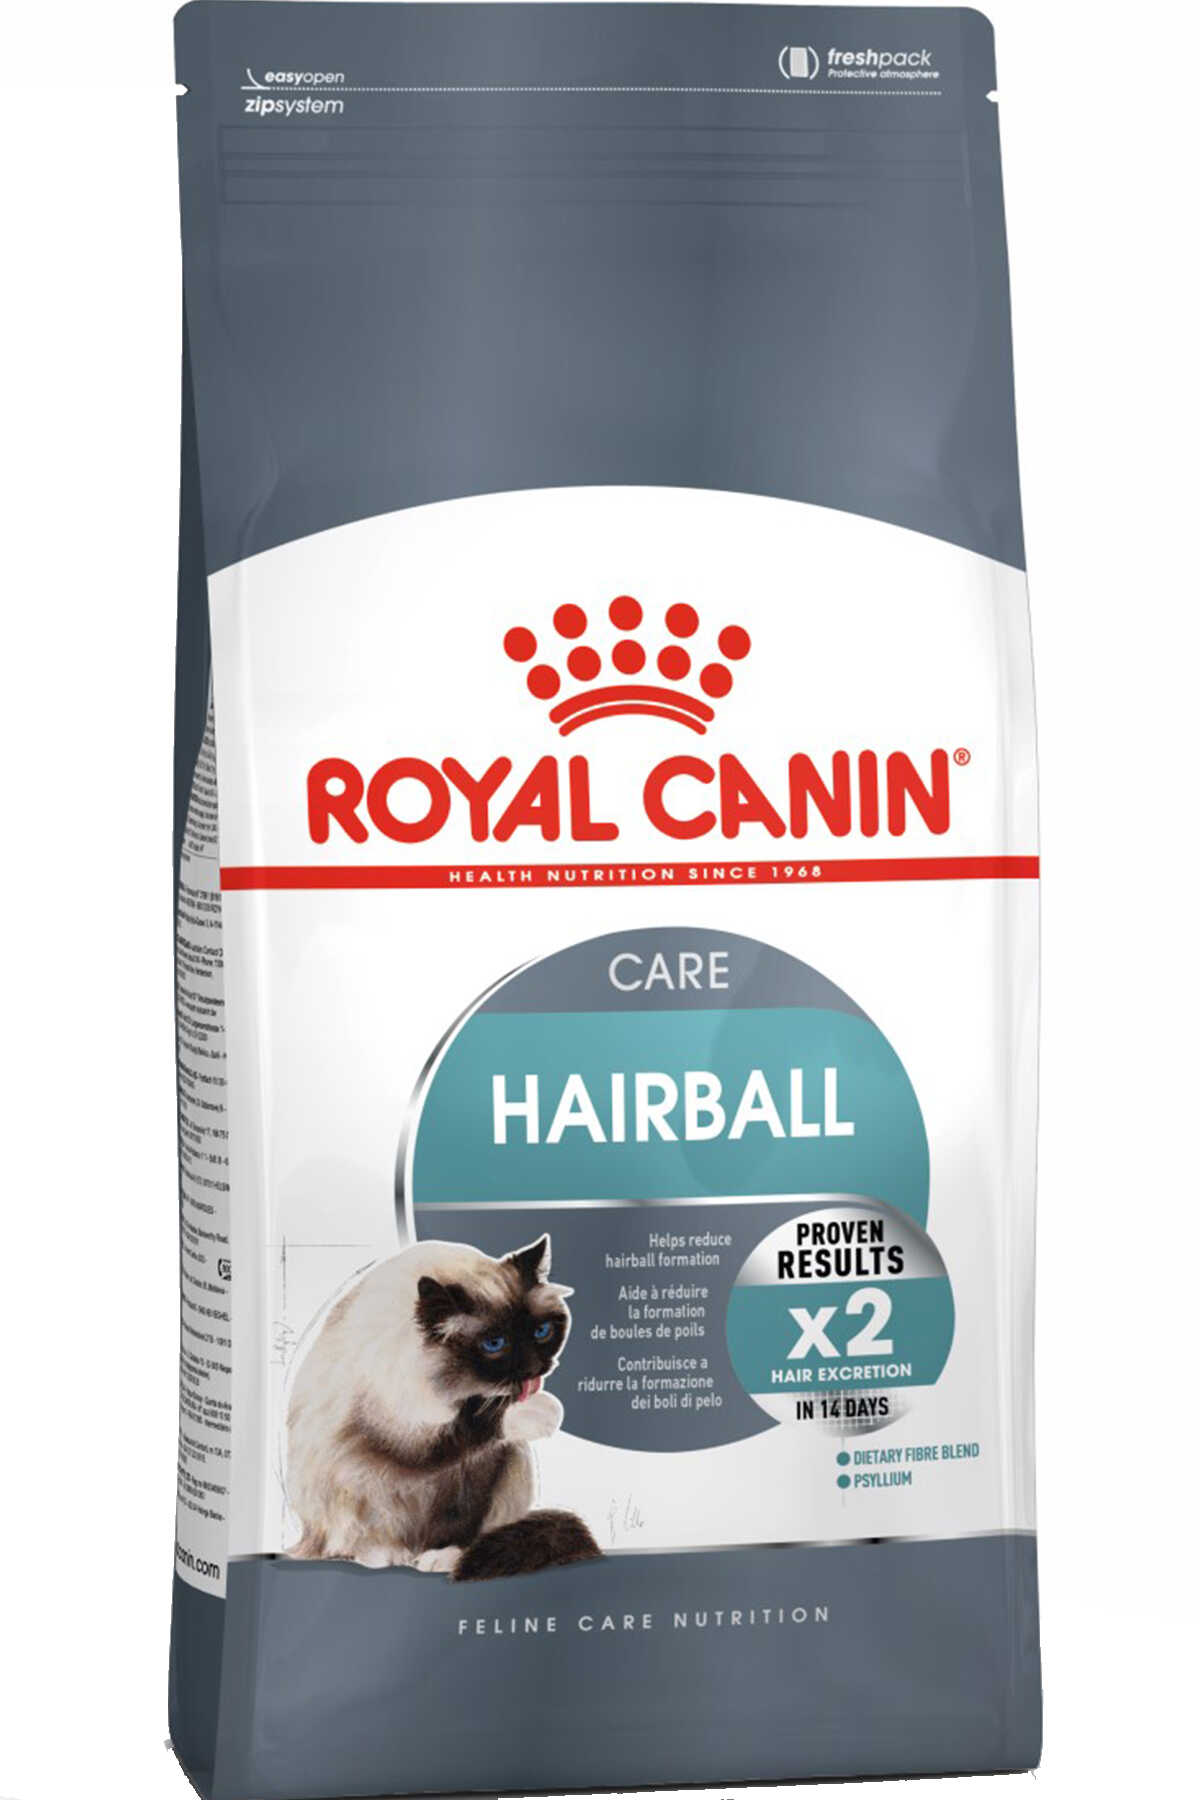 Royal Canin Hairball Care Tüy Yumağı Önleyici Yetişkin Kedi Maması 2kg